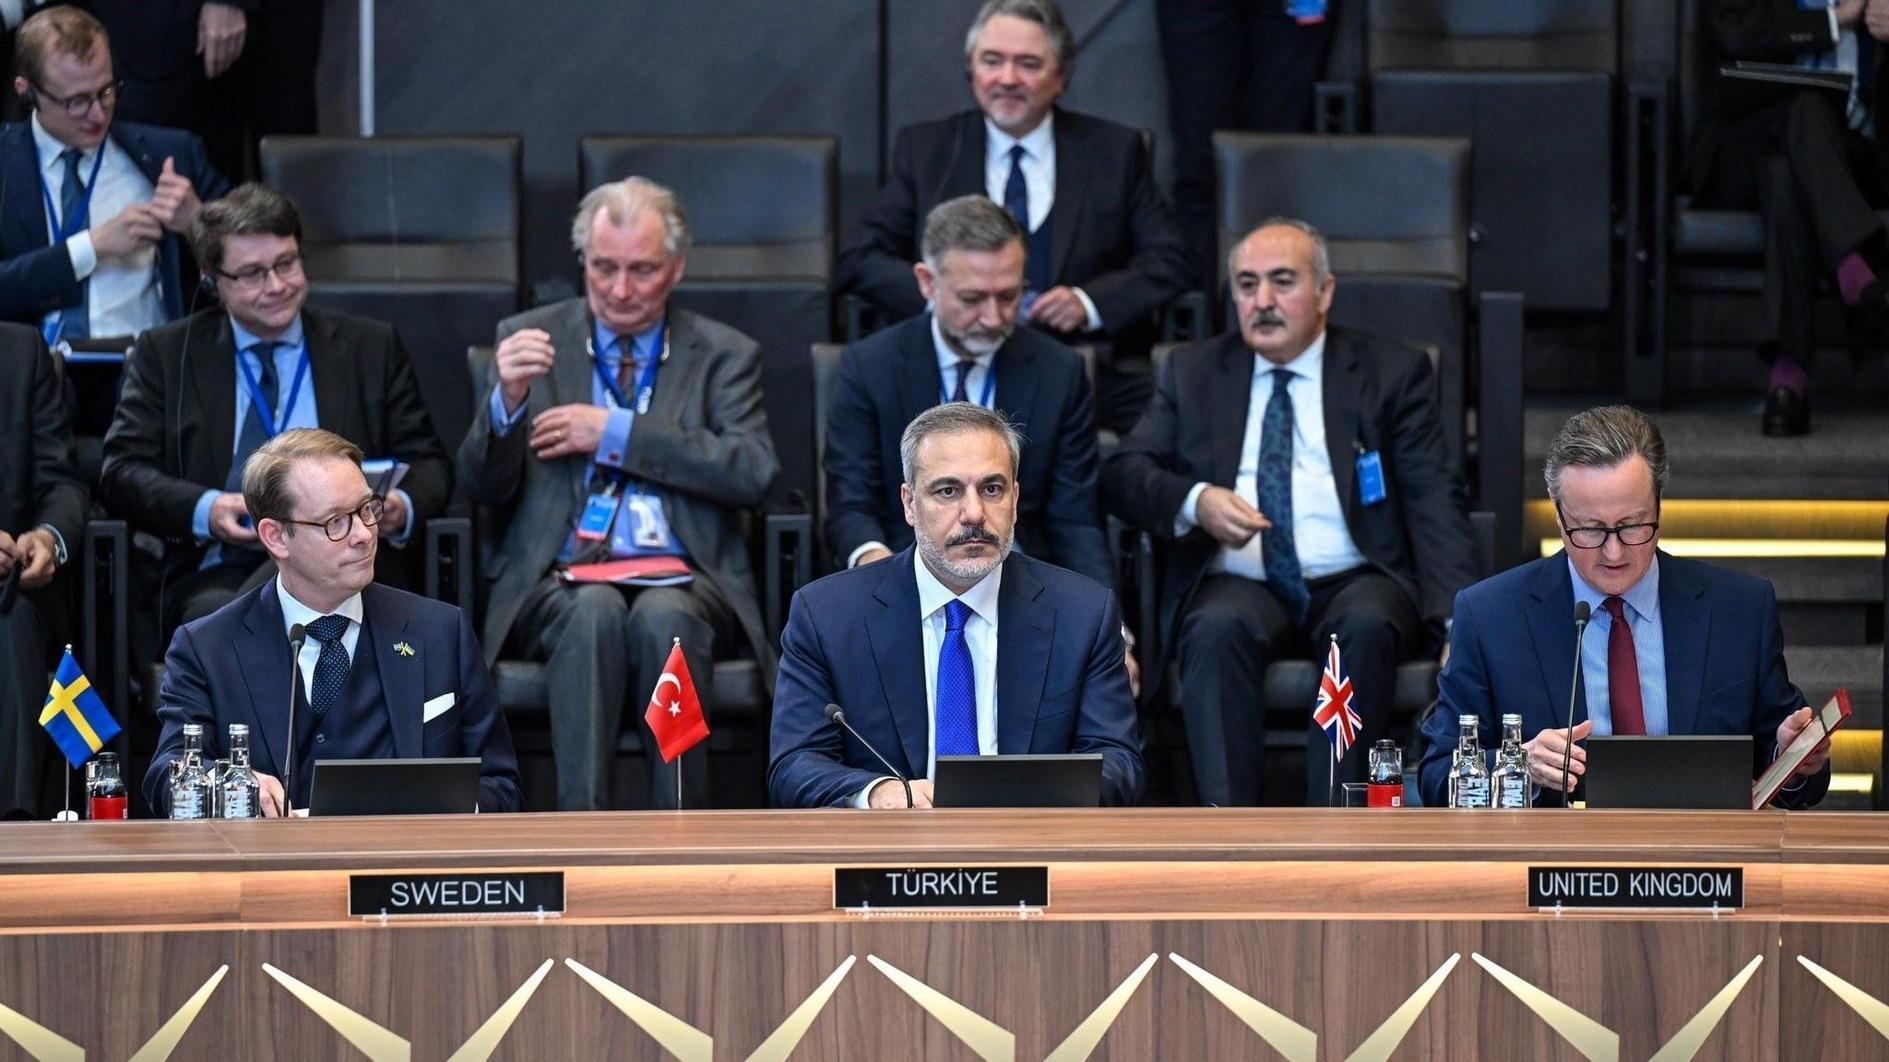 Türkiye verwacht samenwerking op het gebied van terrorismebestrijding van alle NAVO-leden